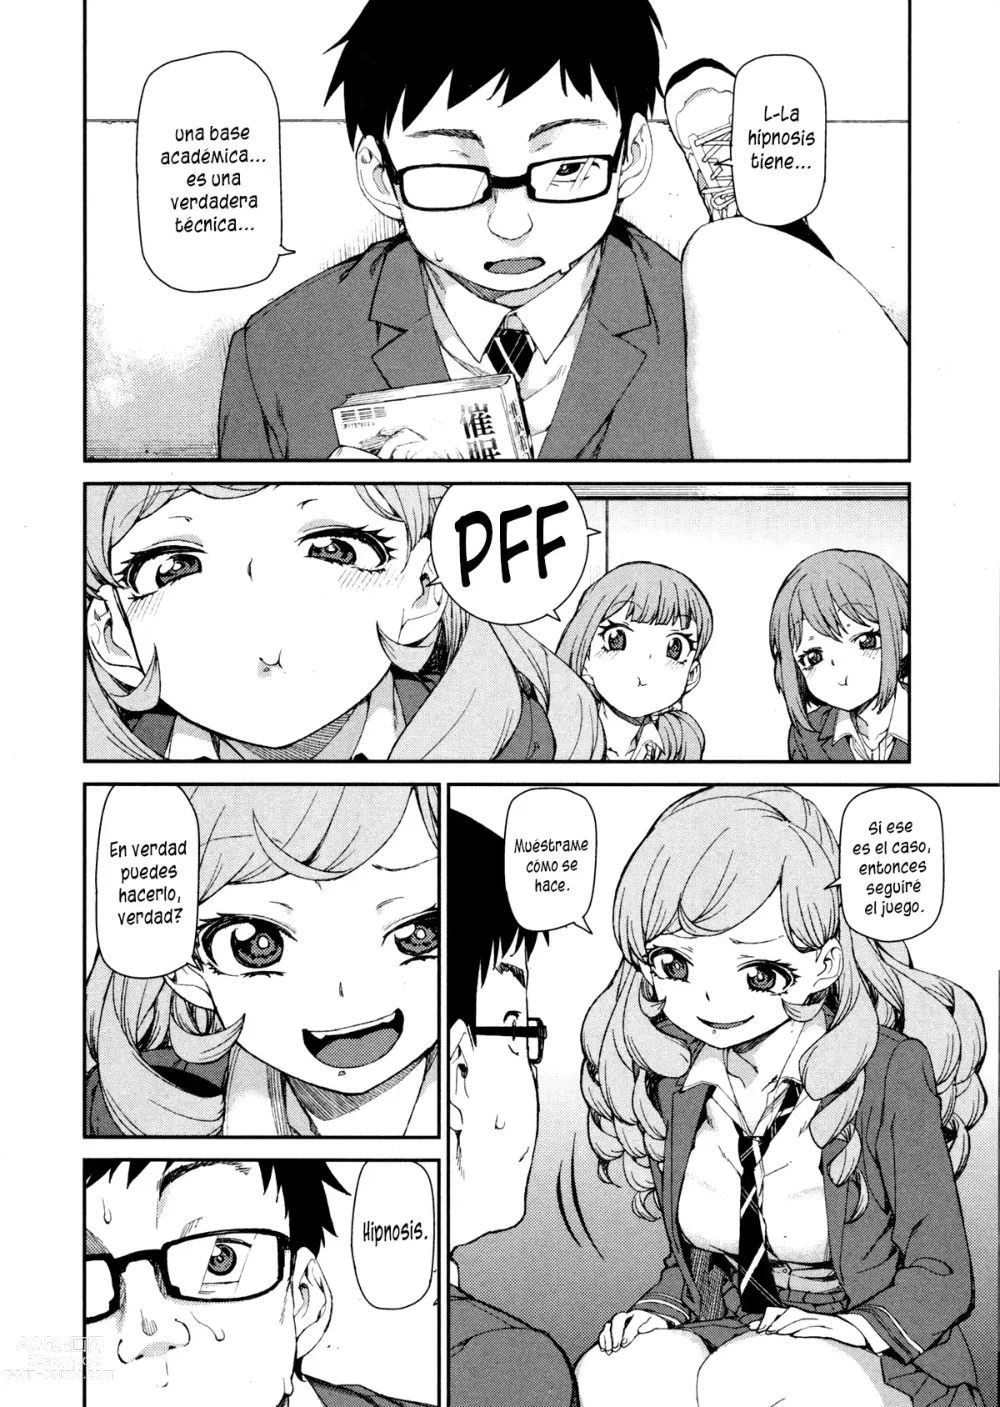 Page 2 of manga Senzaiishiki no Akuma Hontou no Jibun